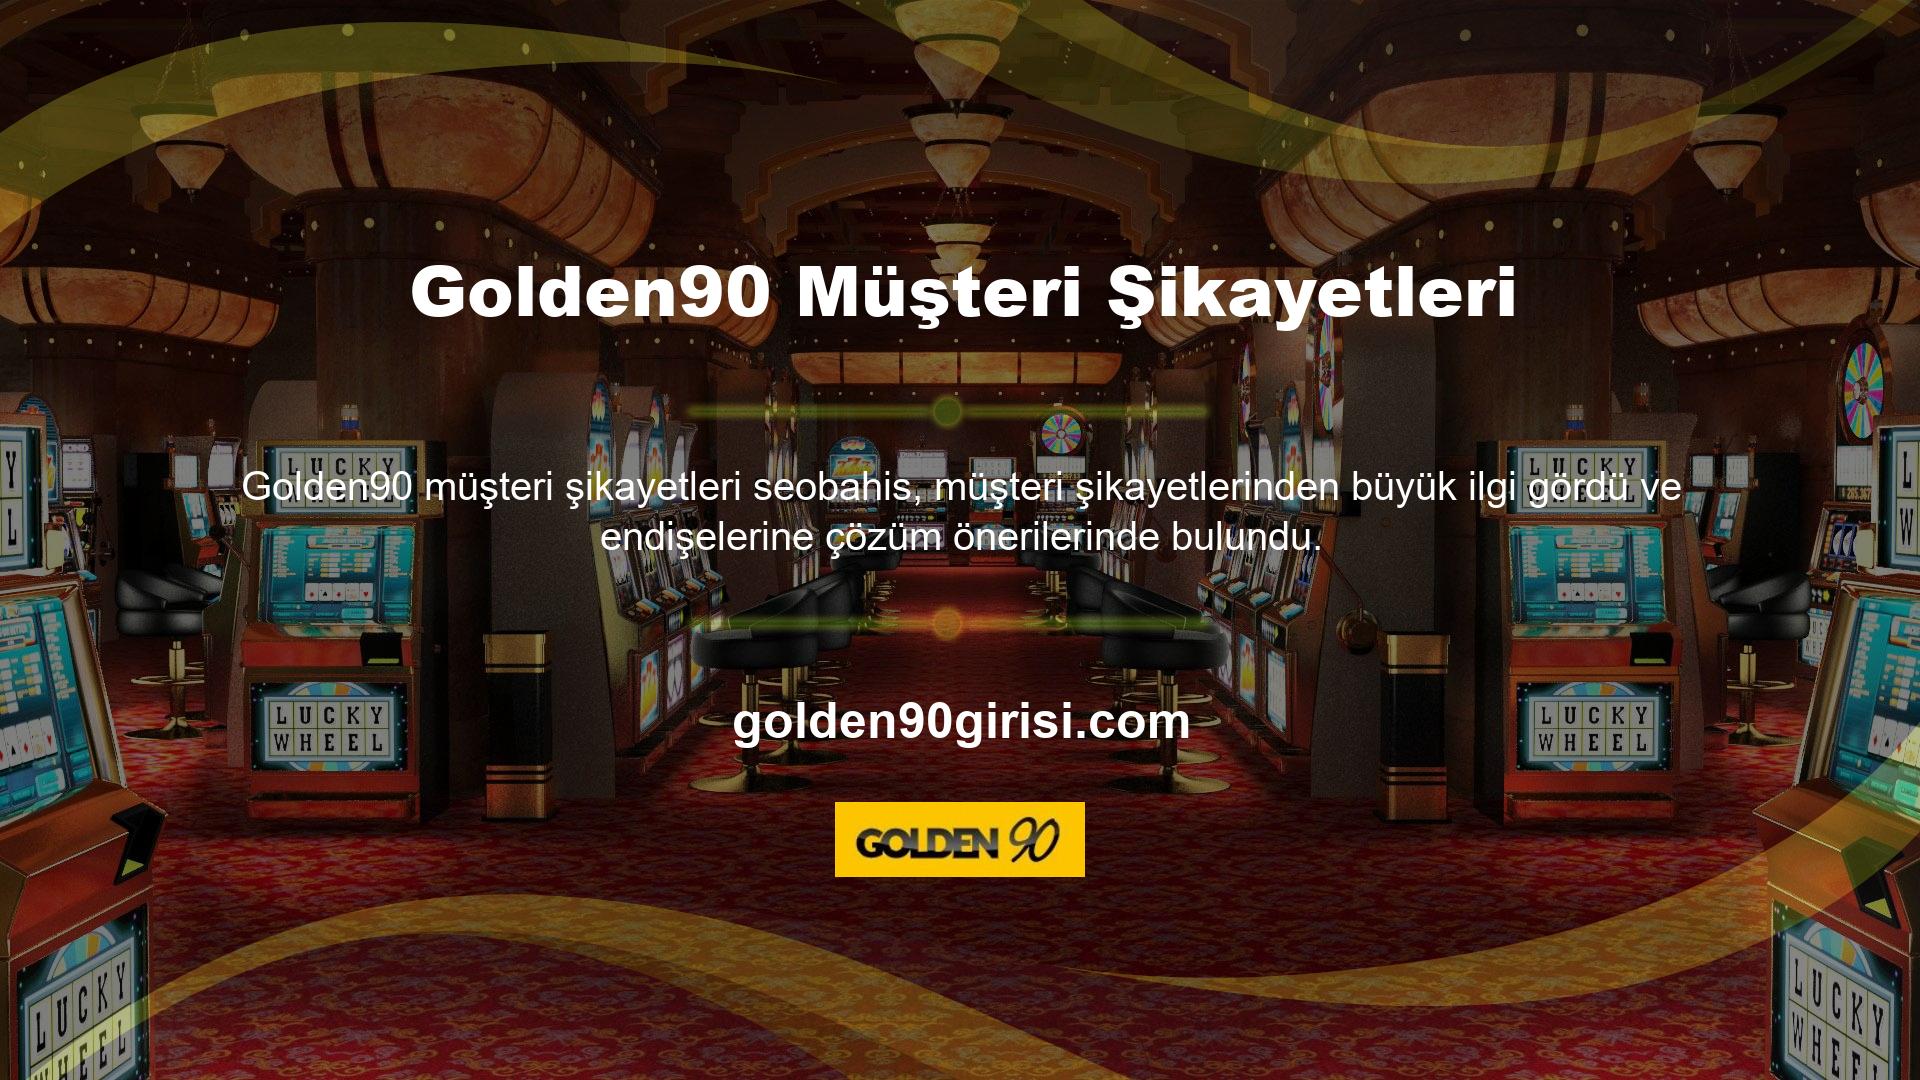 Ayrıca katılımcılar, Golden90 web sitesindeki geri bildirimlerini ve gözlemlerini Golden90 altındaki Kullanıcı Yorumları aracılığıyla nasıl paylaşabilecekleri konusunda sorular yönelttiler